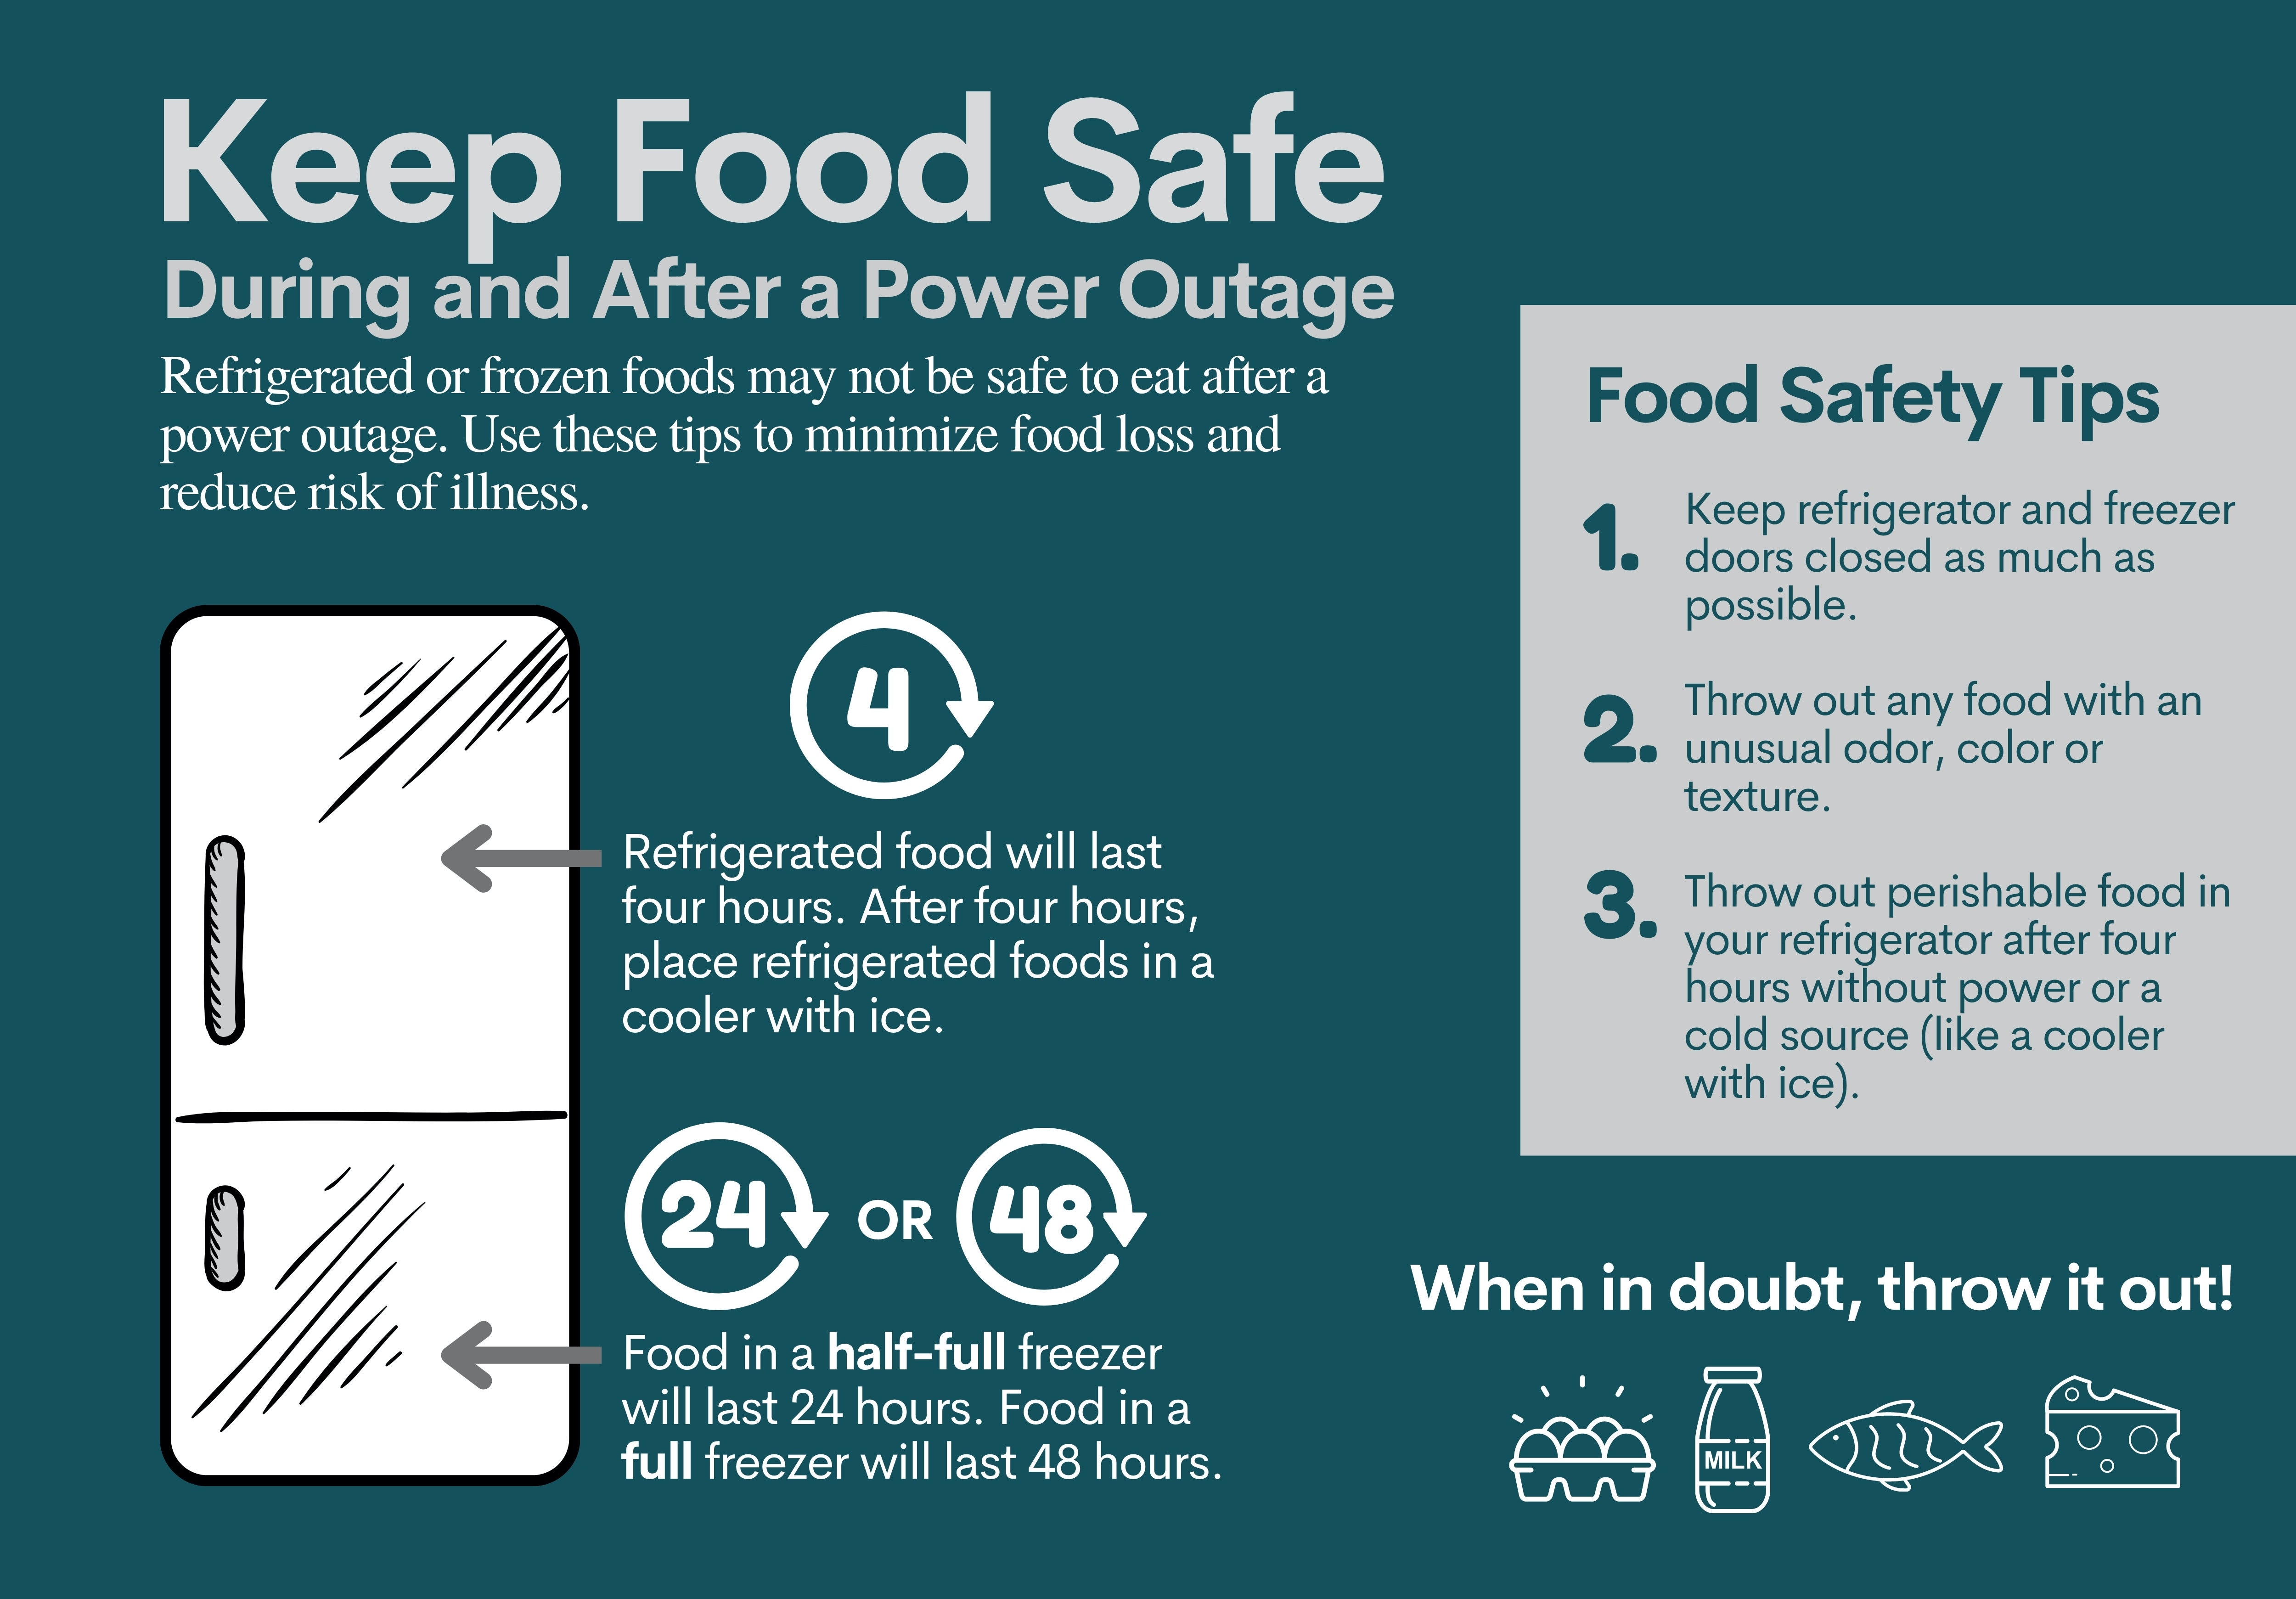 Keep Food Safe tips